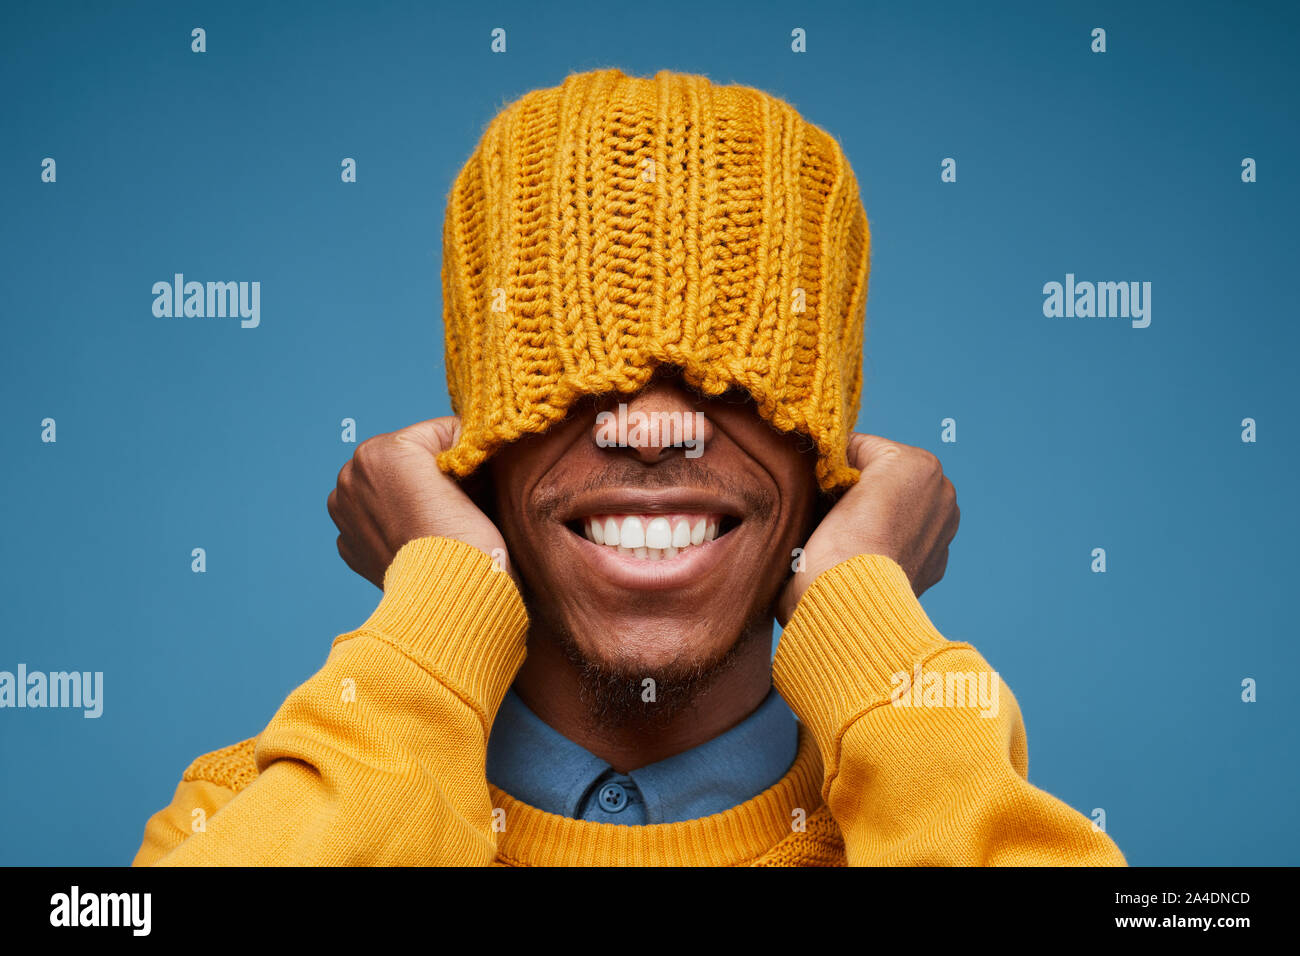 Portrait de vives émotions African man smiling at camera tout en tirant sur le jaune Knit hat posing contre fond bleu, copy space Banque D'Images